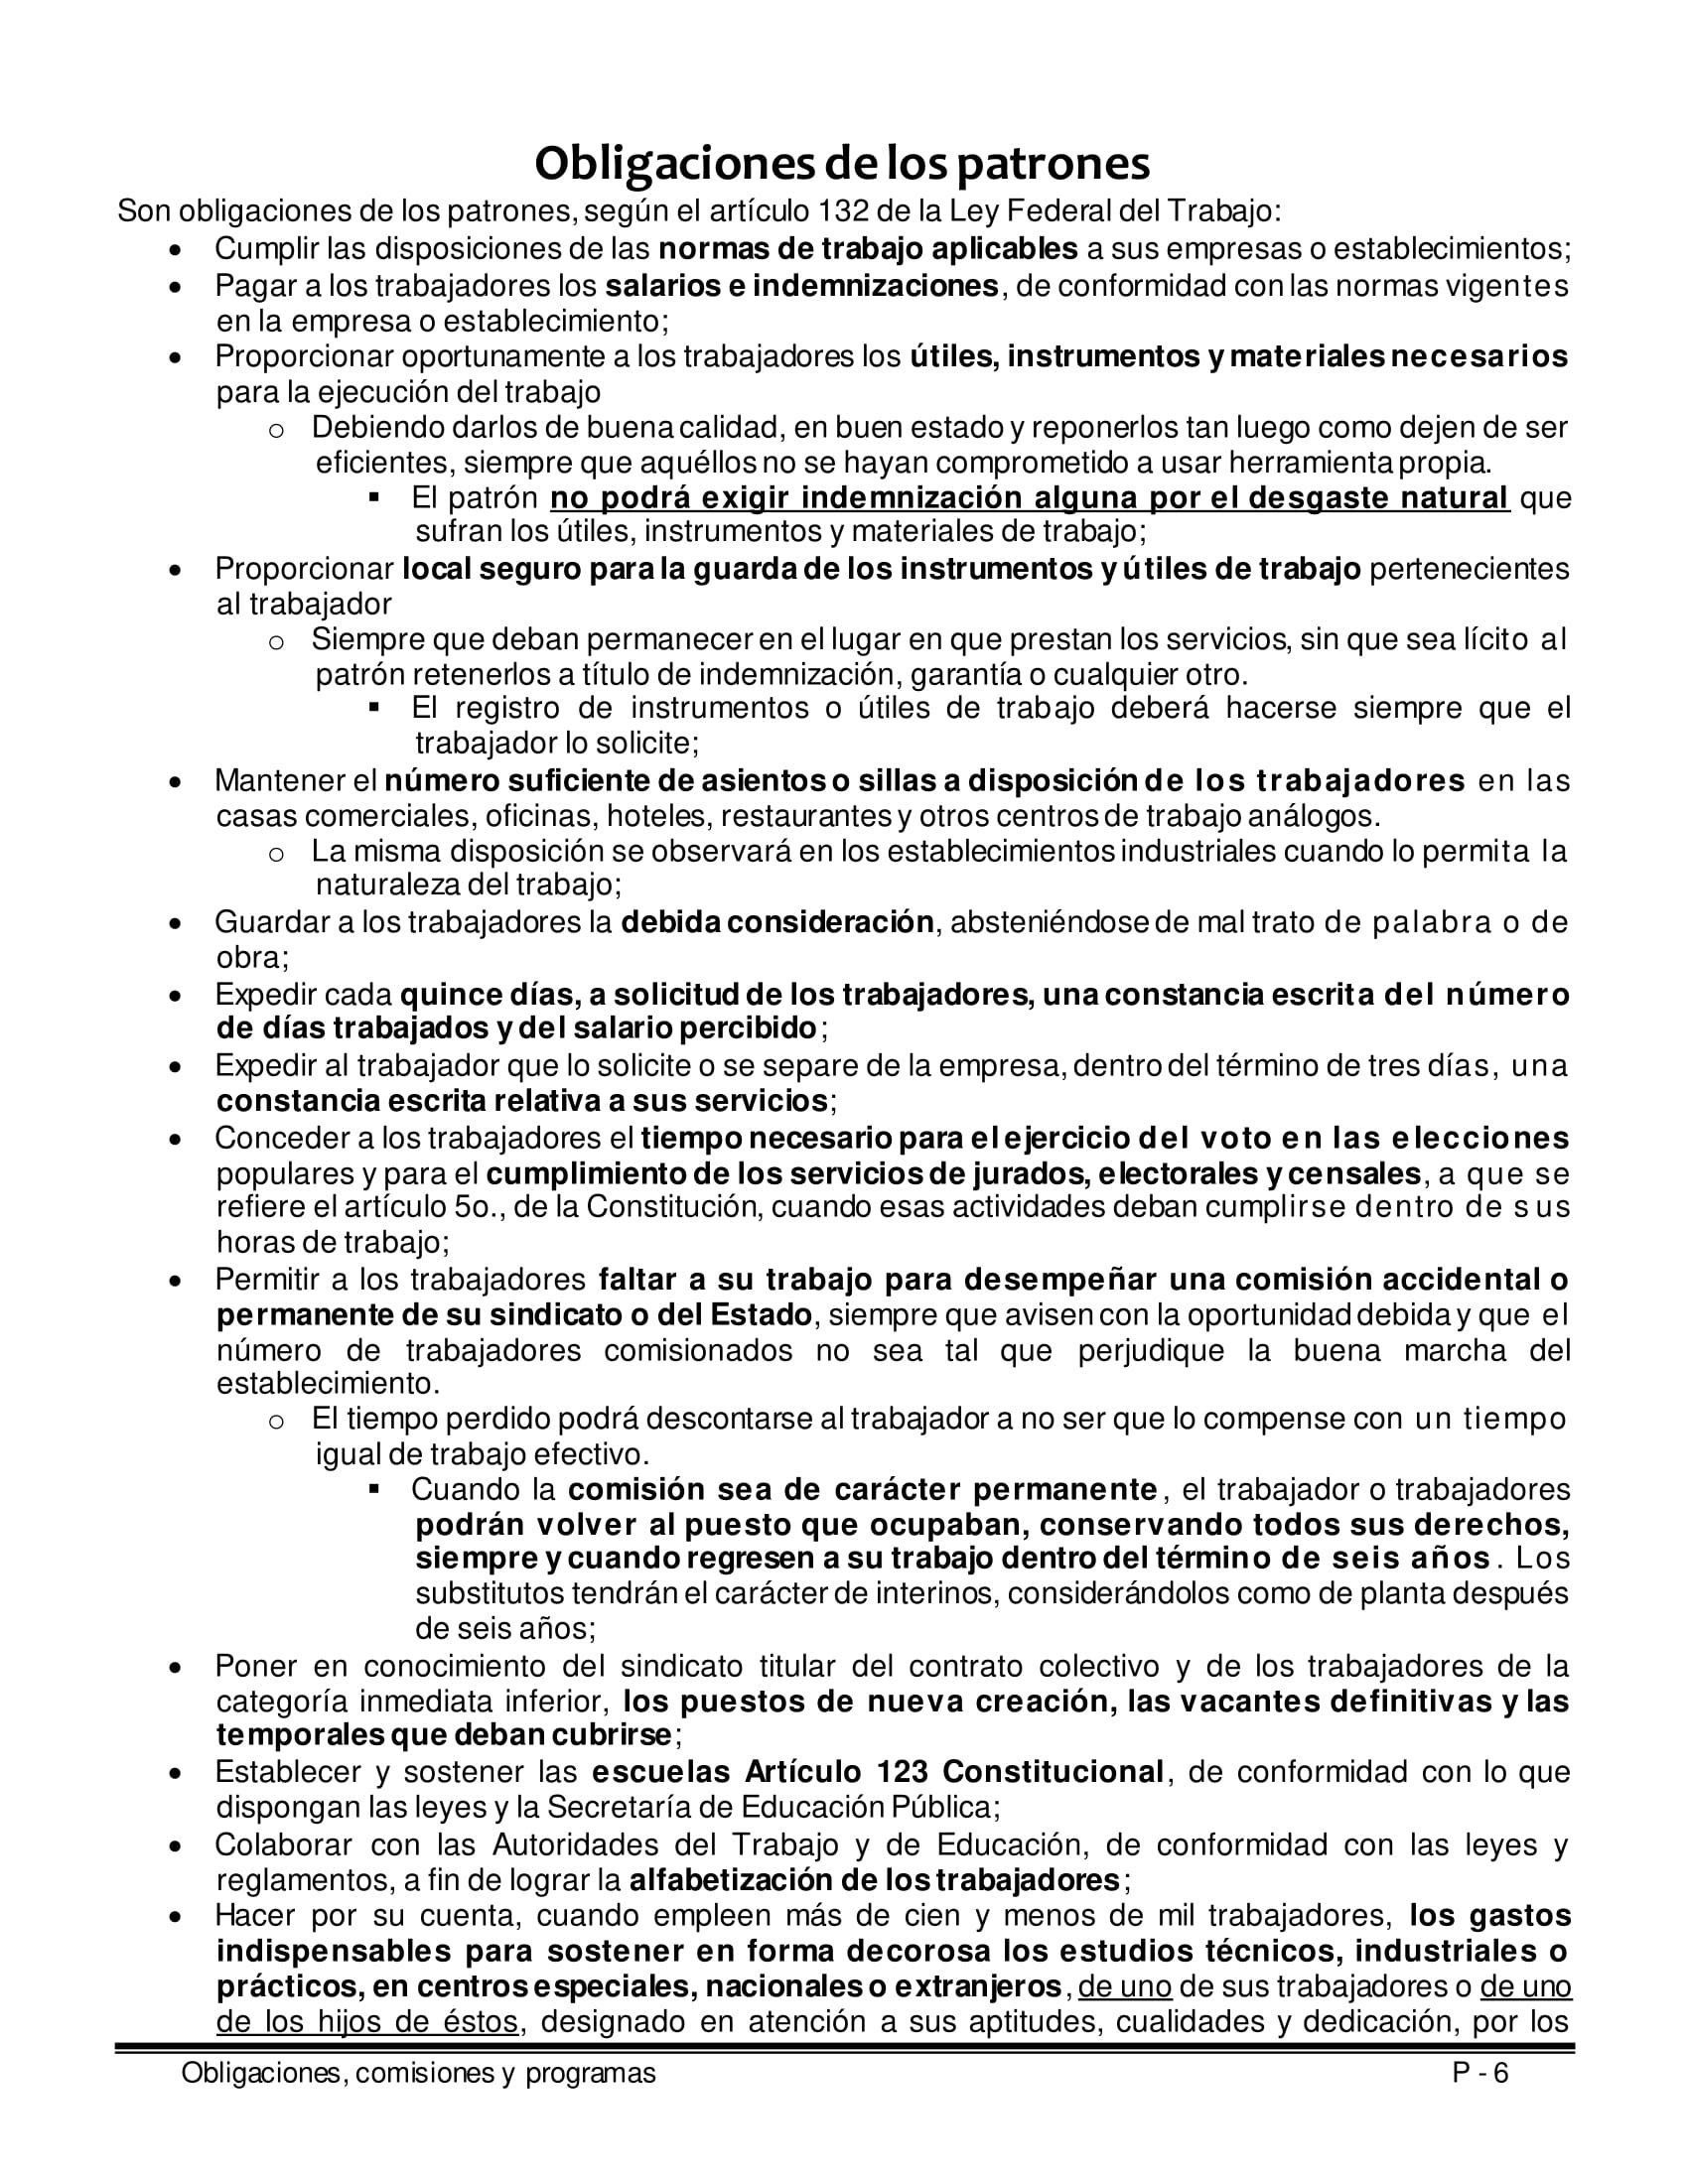 Libro_OBLIGACIONES_COMISIONES_PROGRAMAS_M3_EPSS-06